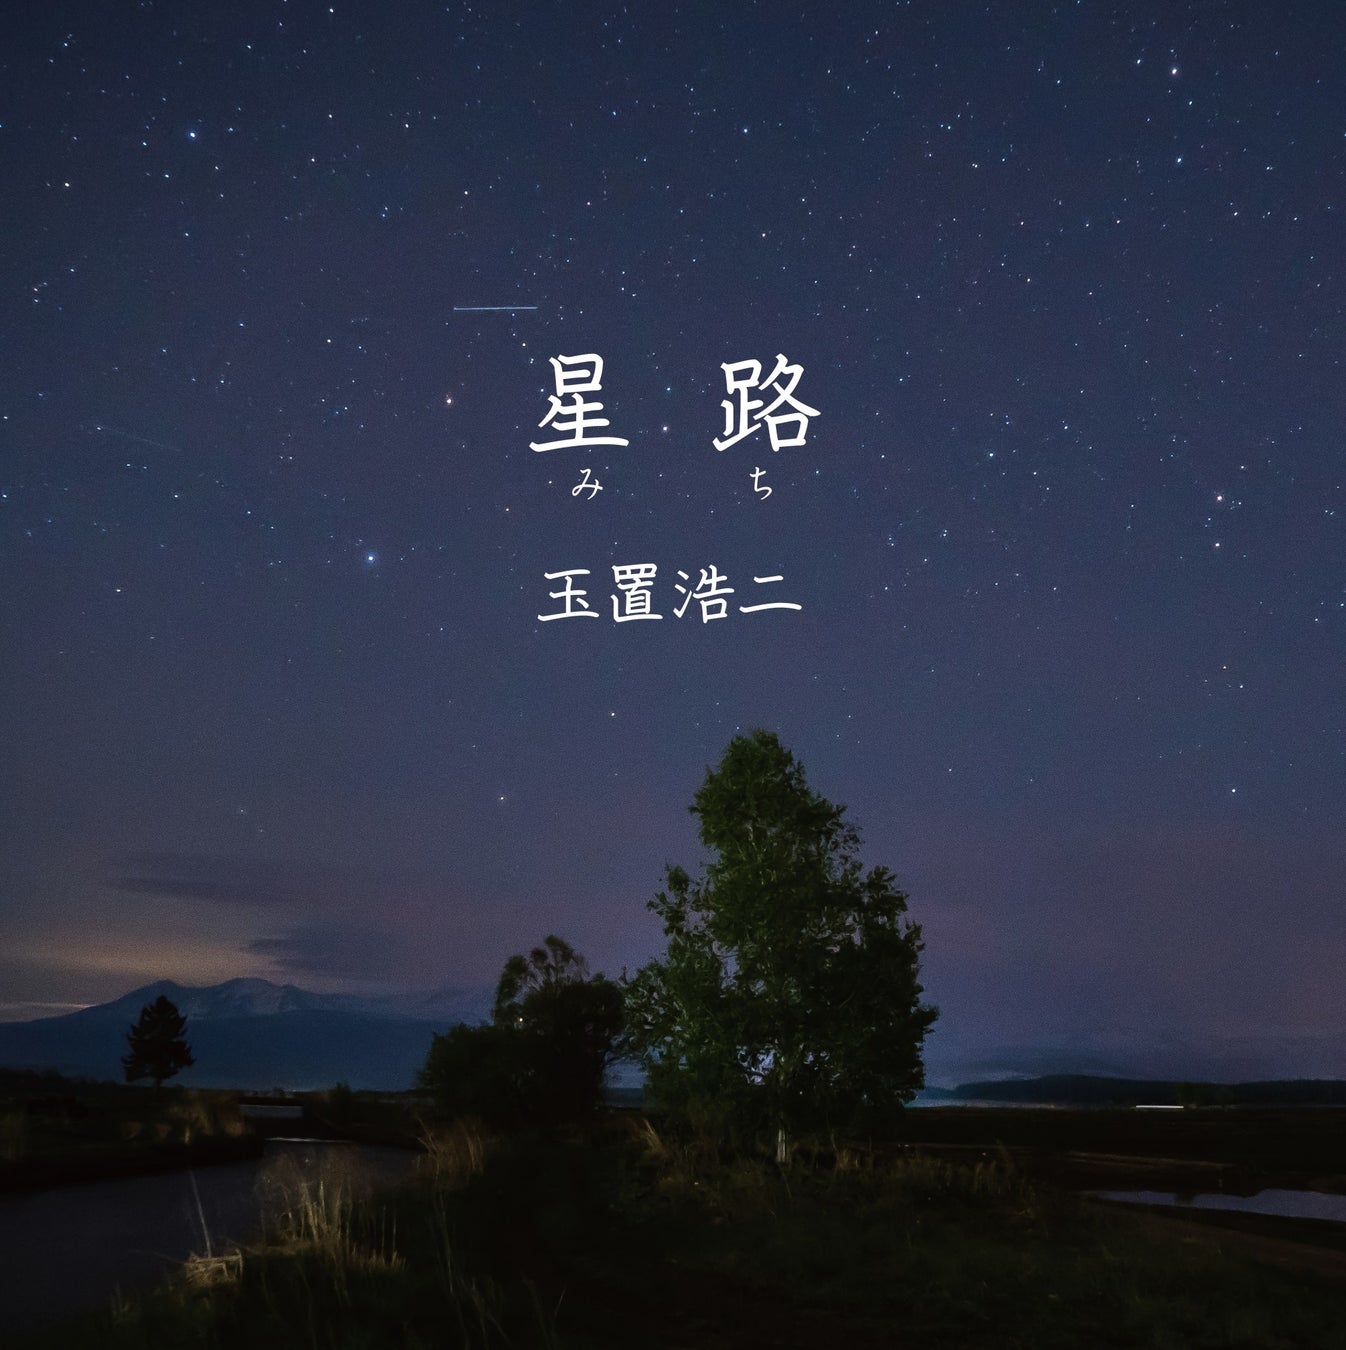 玉置浩二、映画『大河への道』主題歌「星路 (みち)」のシングルが本日発売！新たなコンサートツアーの開催も決定！